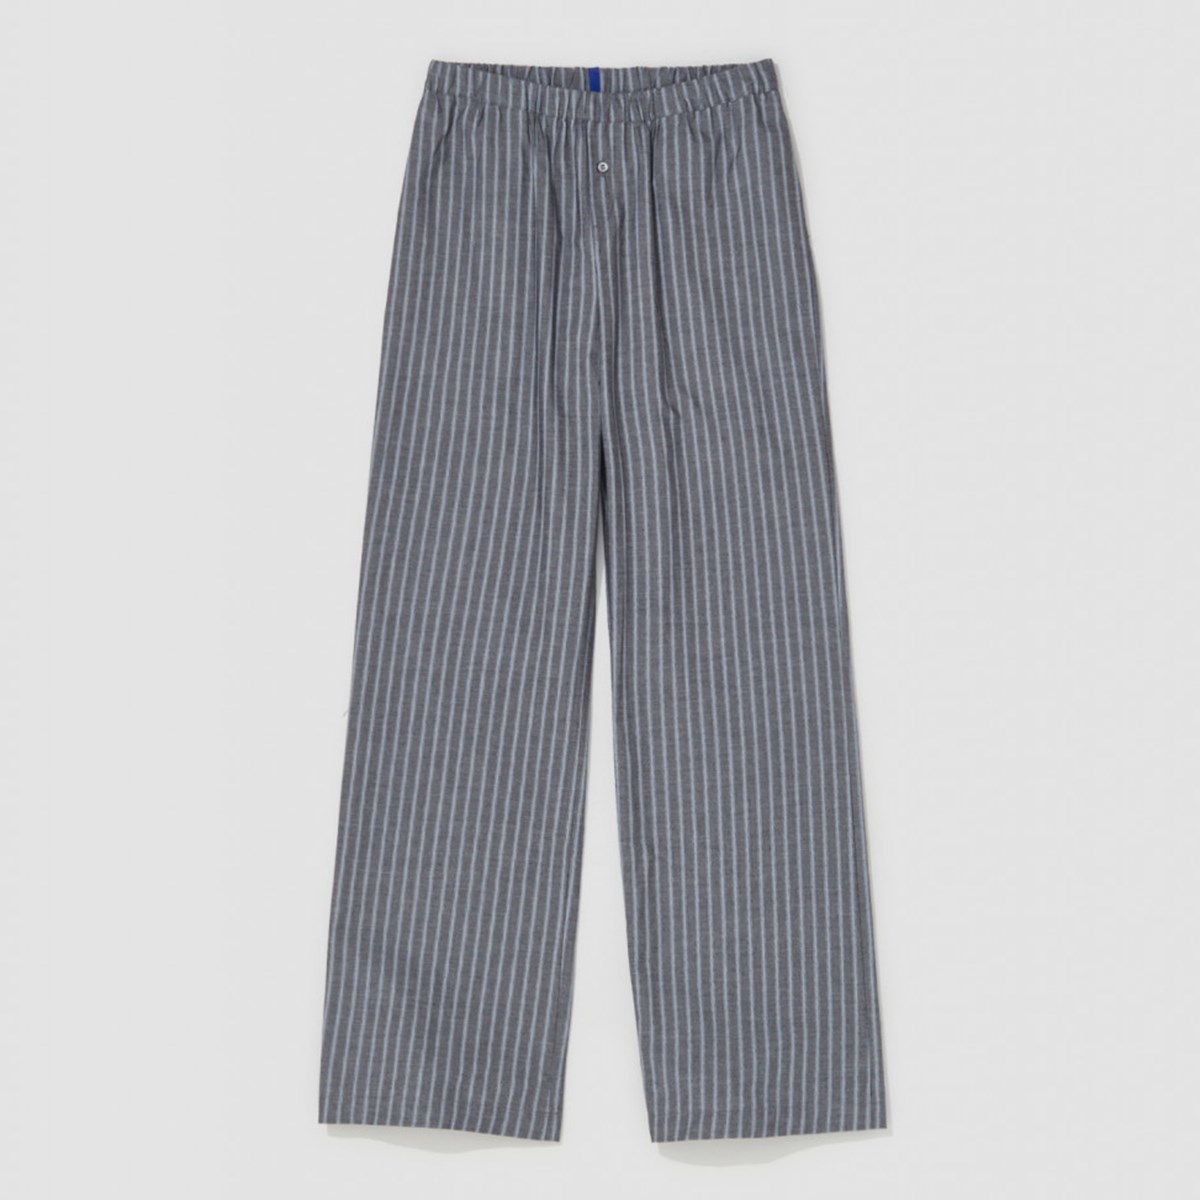 Серые хлопковые брюки в полоску Kimoto Paloma Wool — купить винтернет-магазине lio